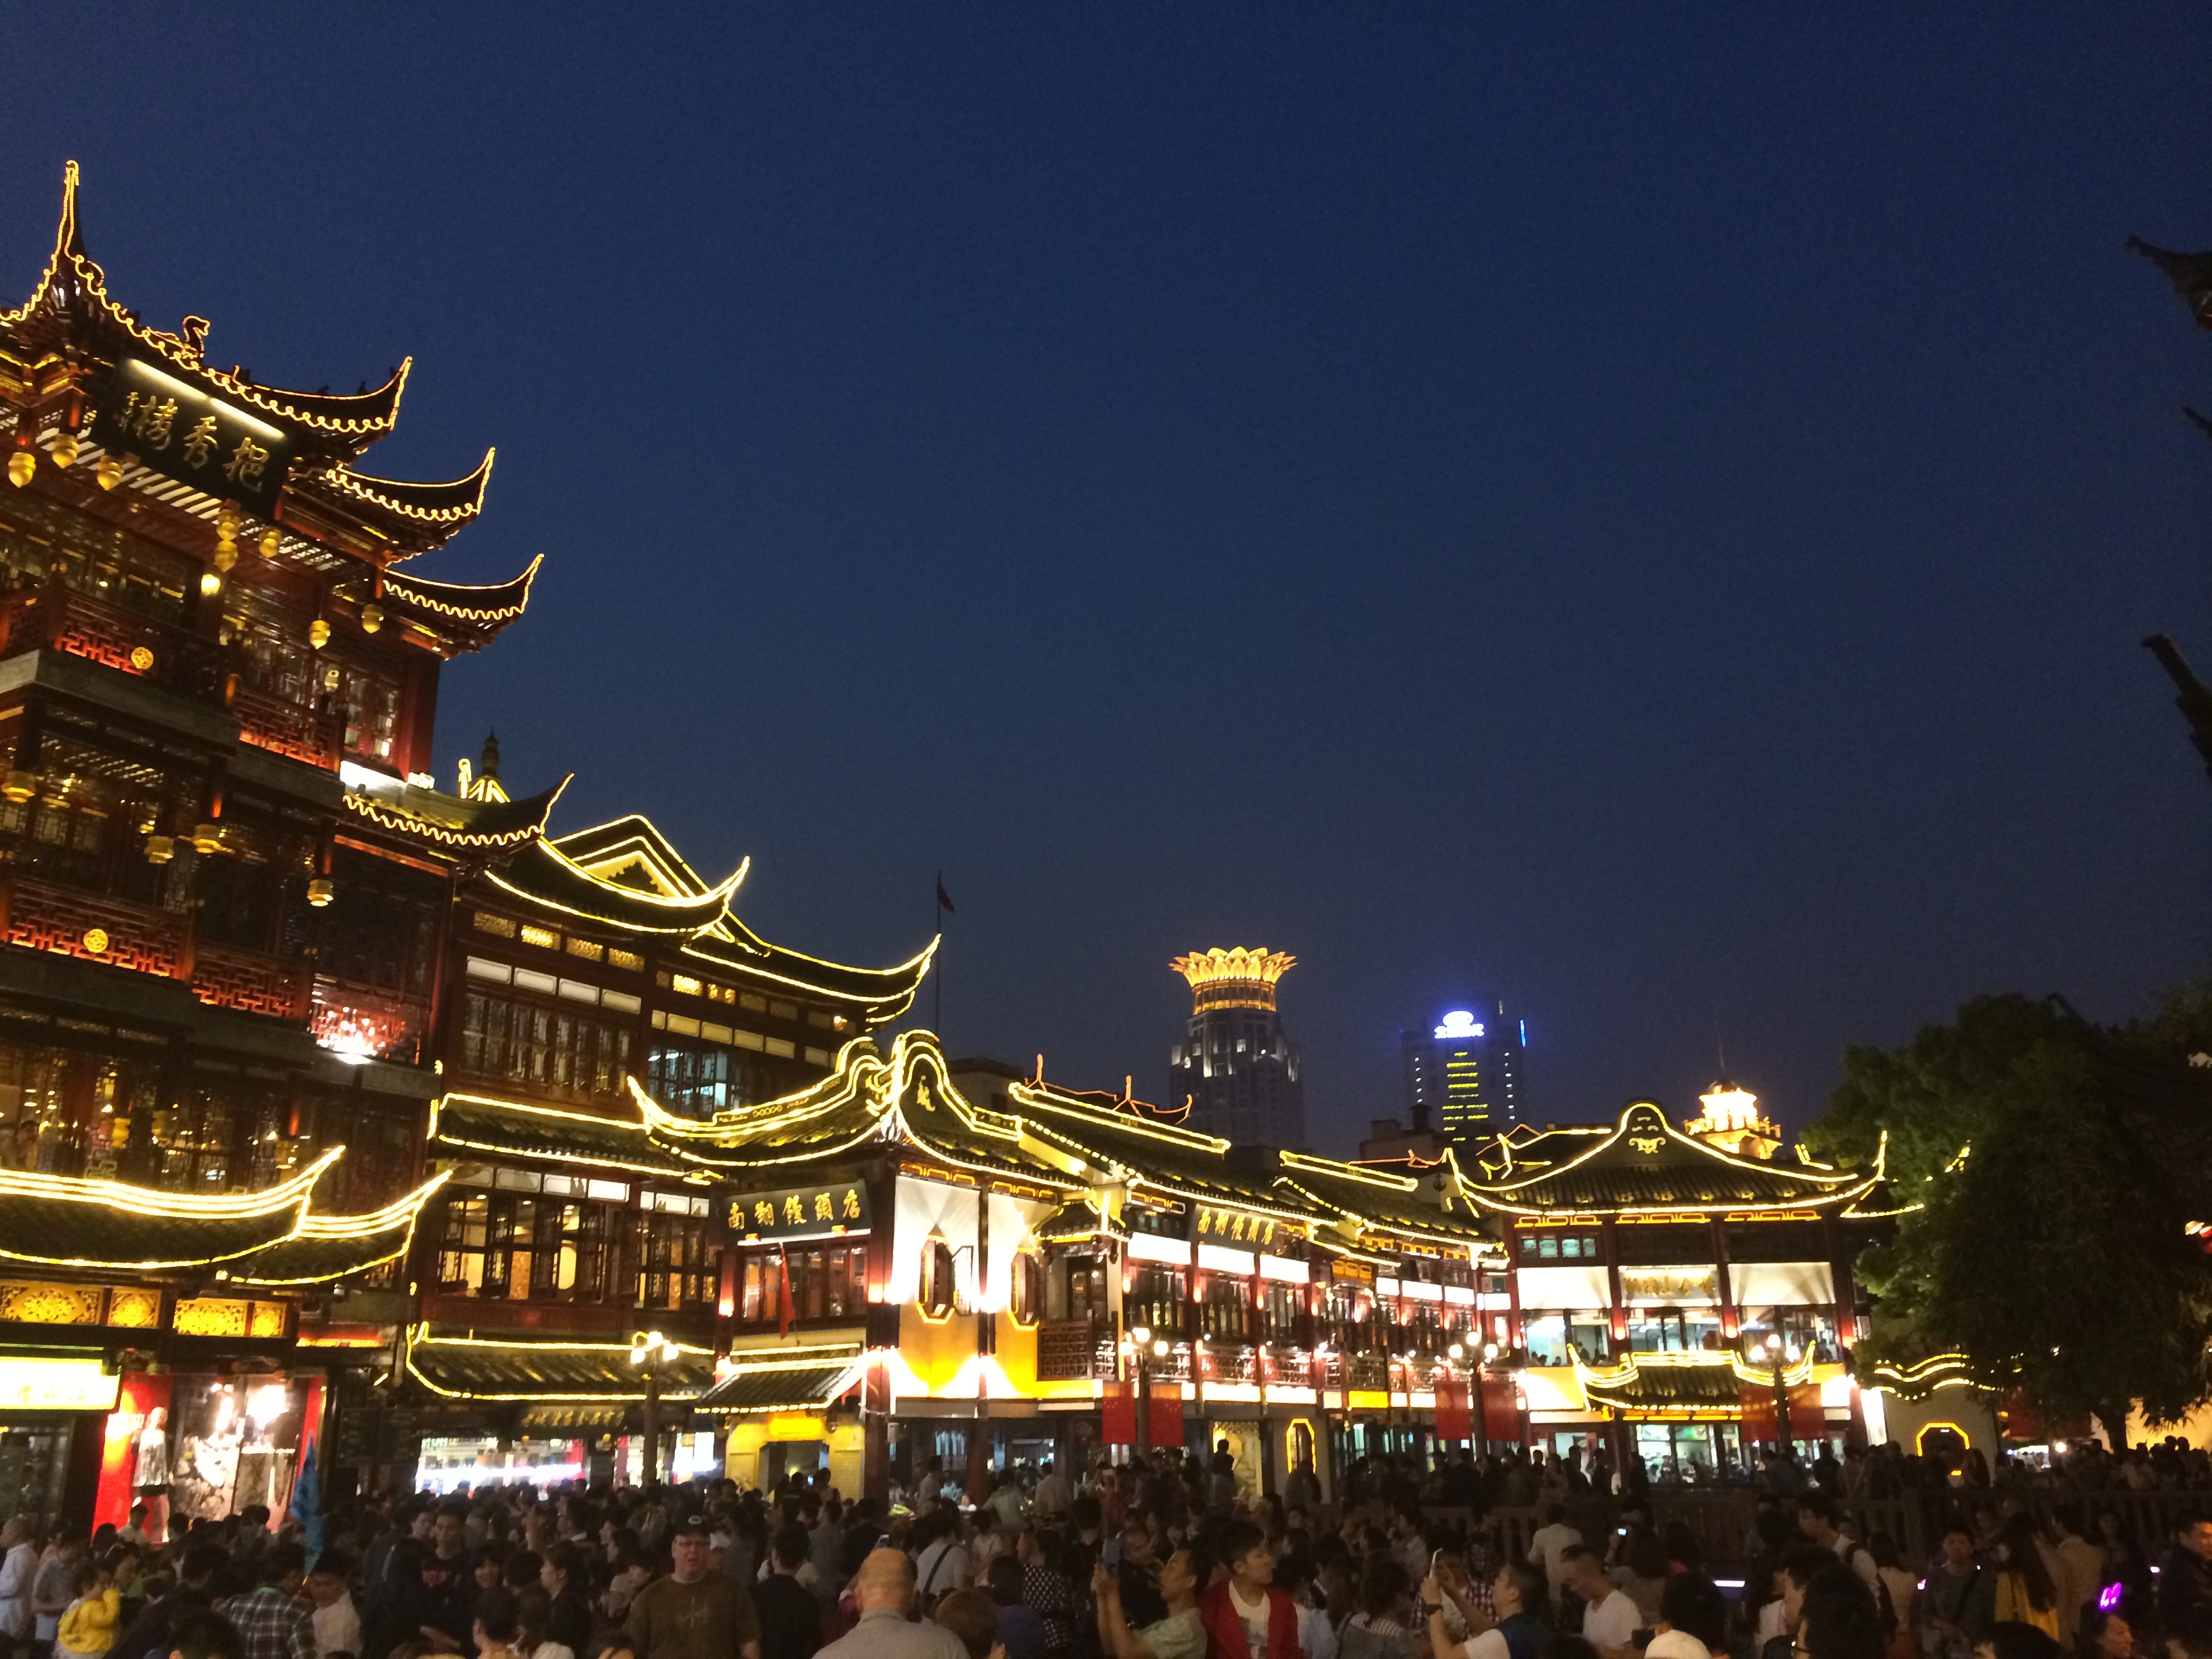 【携程攻略】上海城隍庙旅游区景点,十多年没去过城隍庙了，这里依旧是上海最热闹的地方，四面八方游客至…